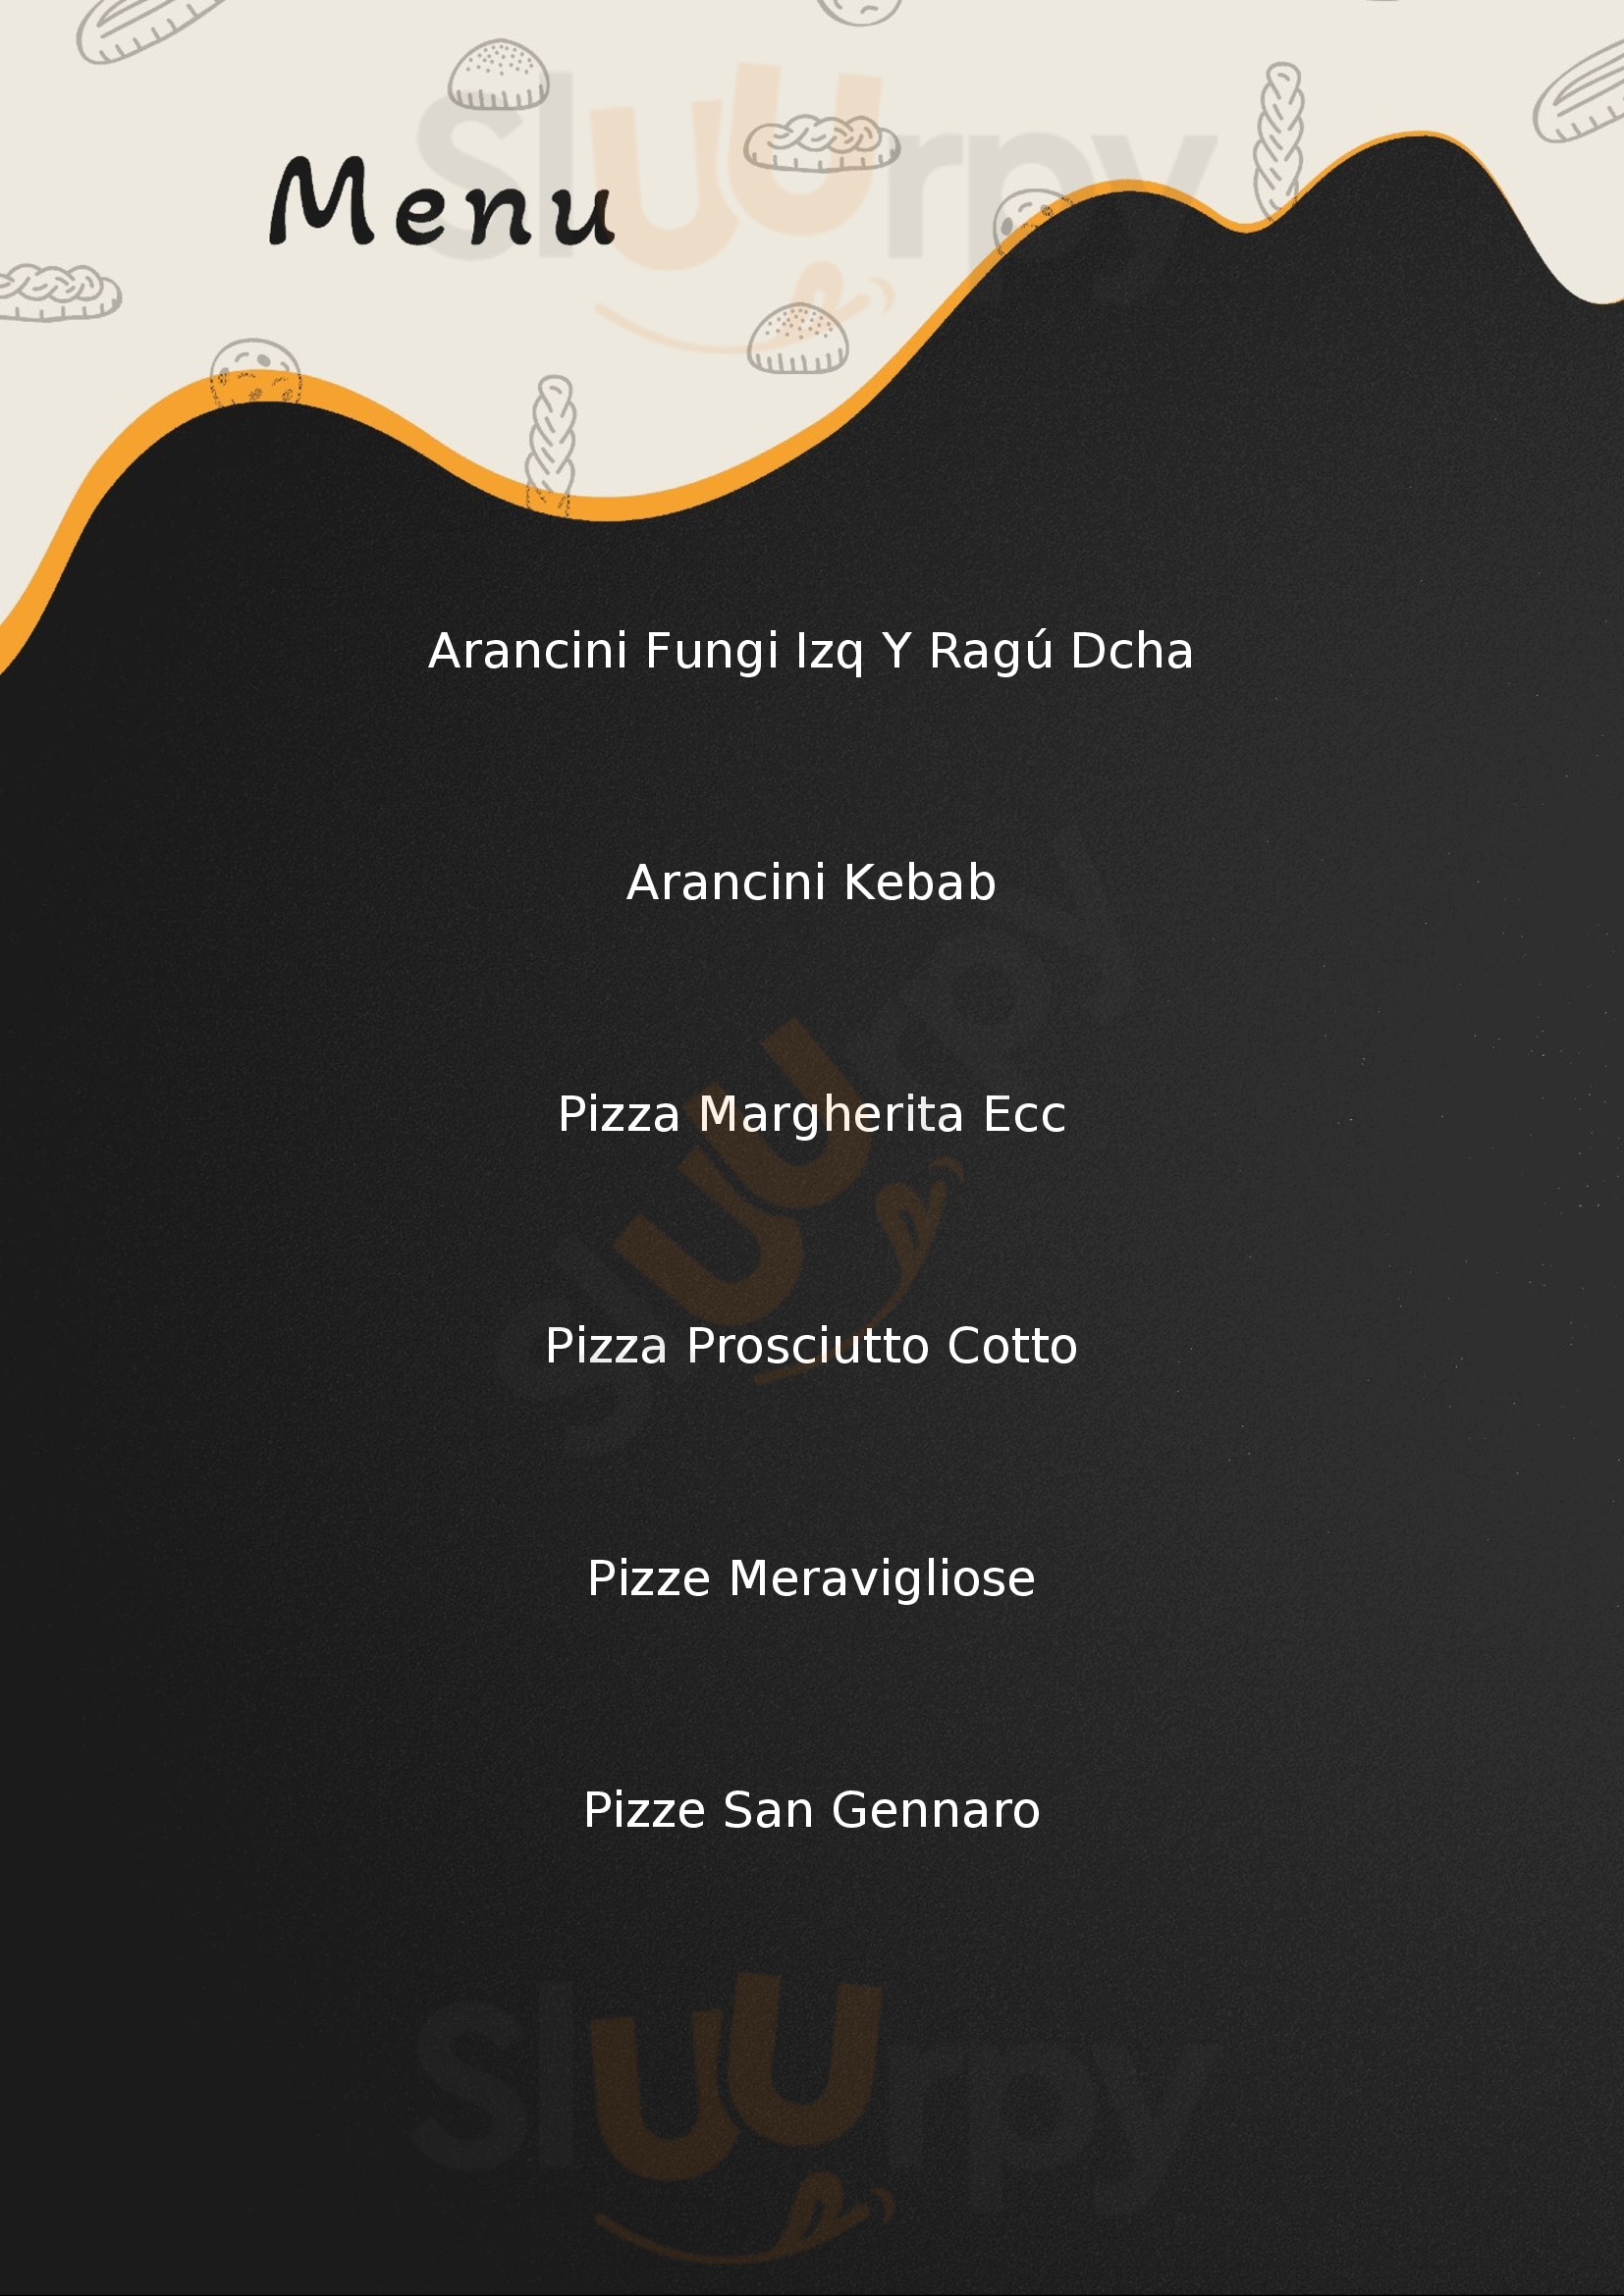 La rinascente pizza exspess Barcellona Pozzo di Gotto menù 1 pagina